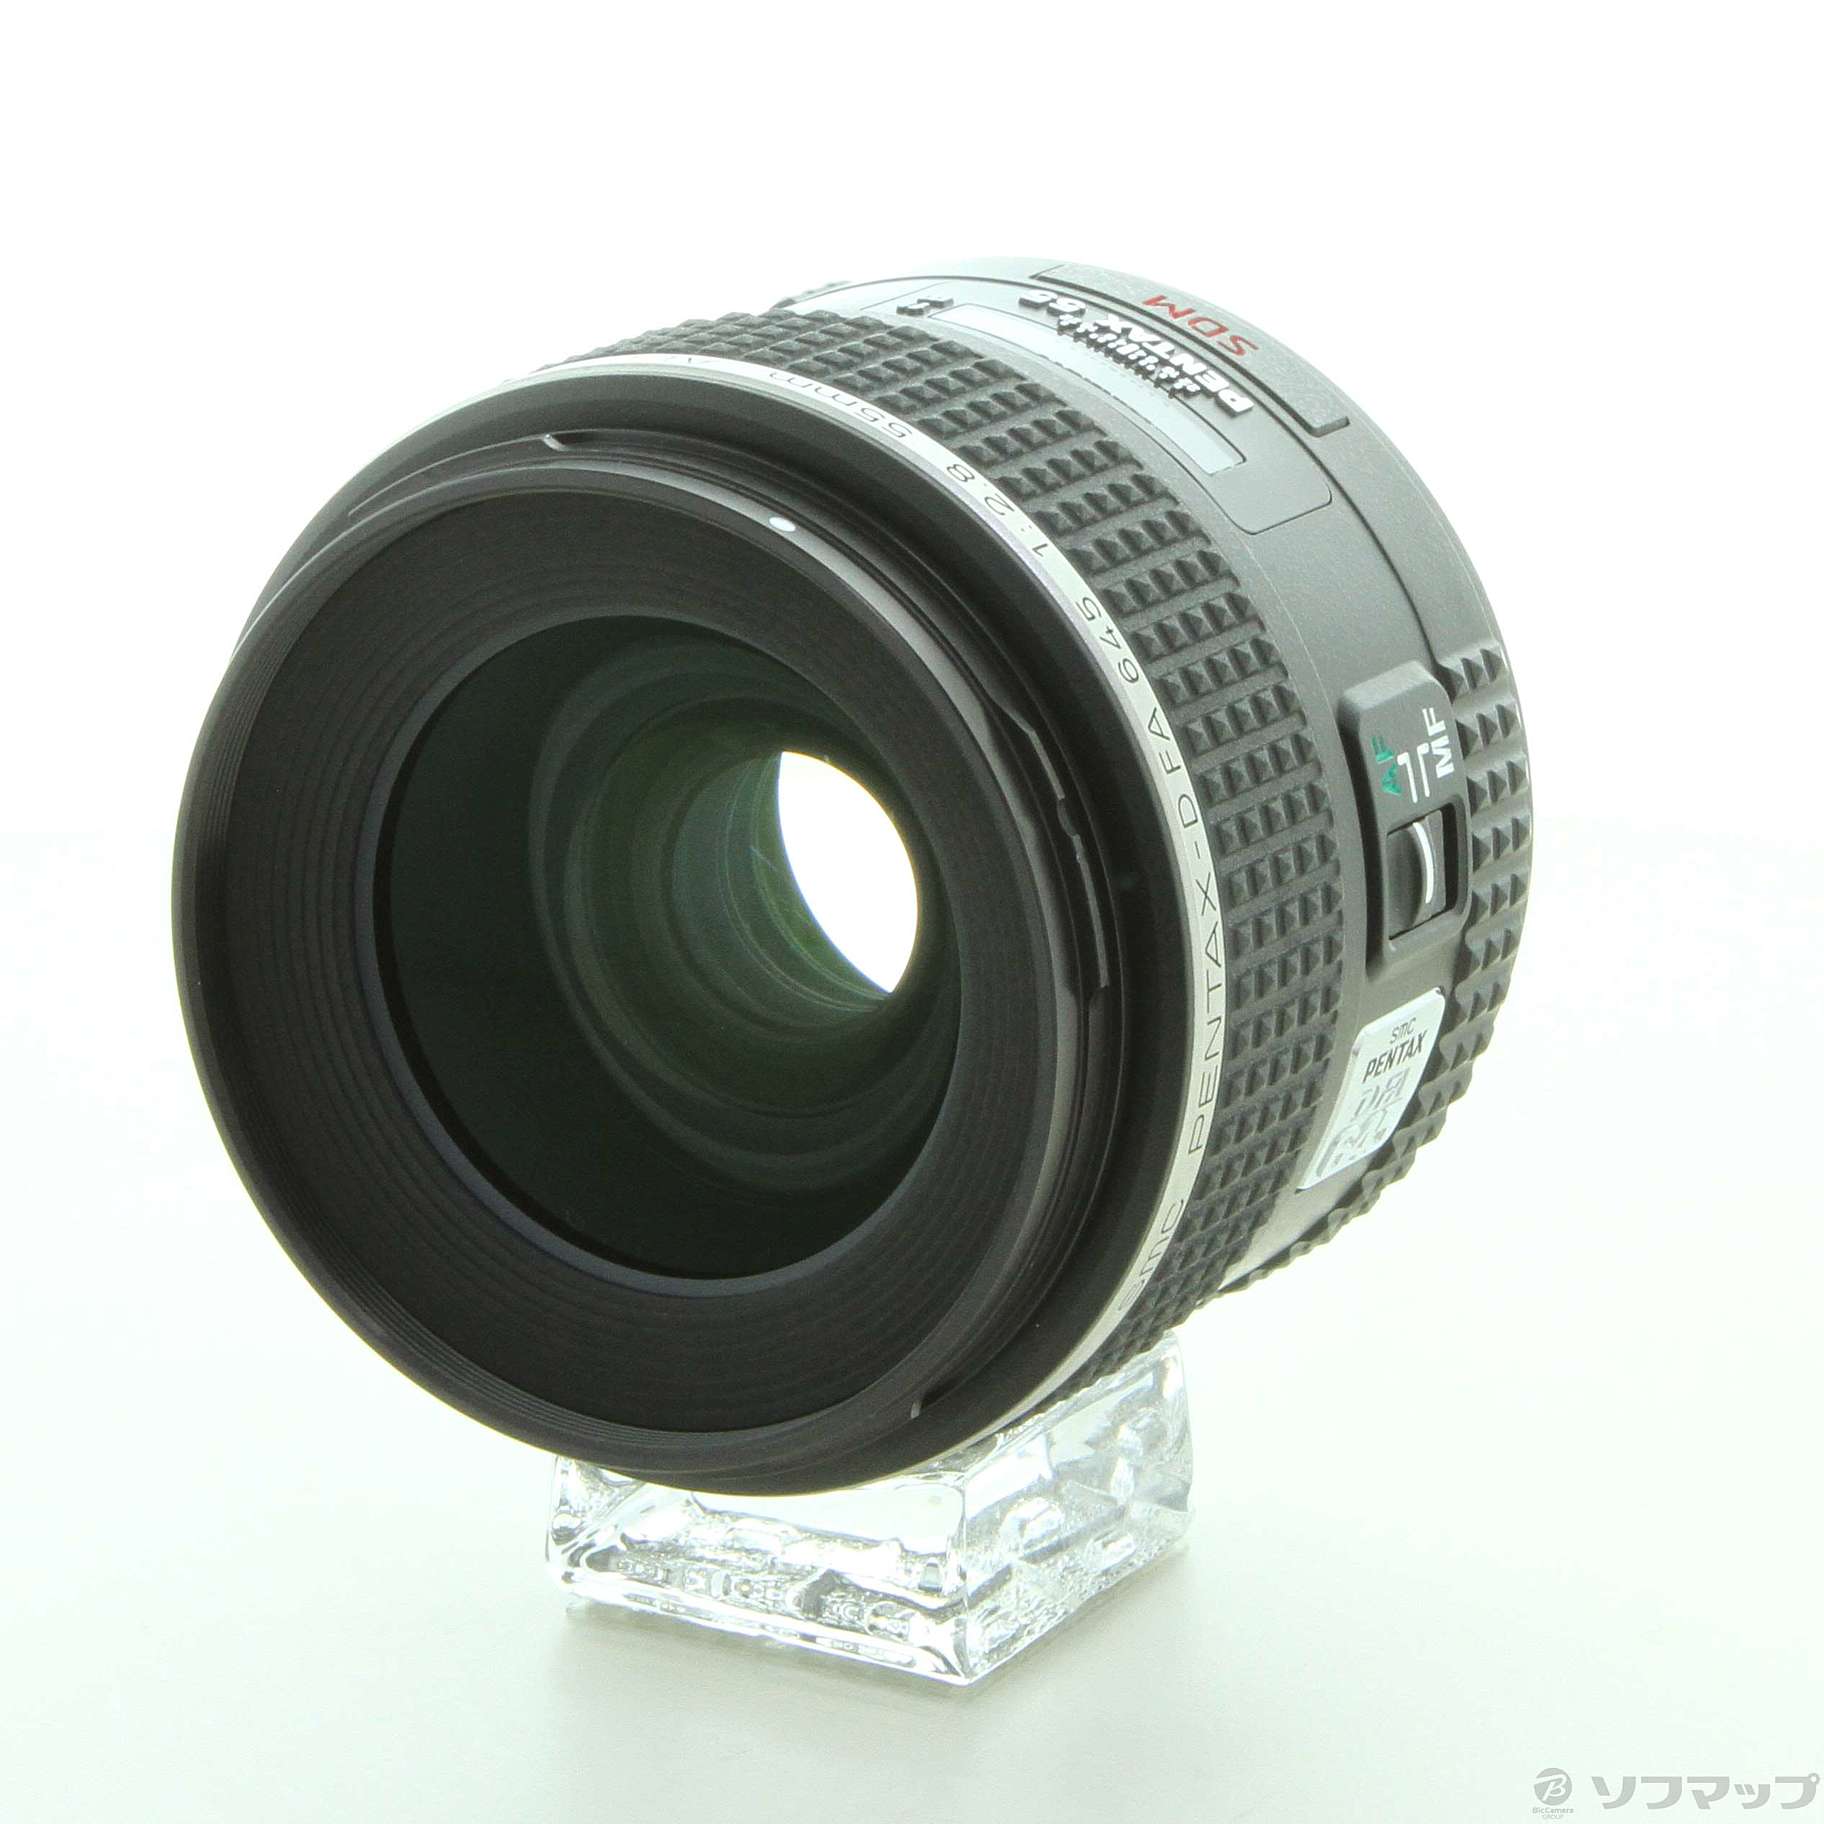 季節のおすすめ商品 PENTAX 標準単焦点レンズ 防塵 防滴構造 D FA645 55mmF2.8 AL IF SDM AW 新品未使用品 